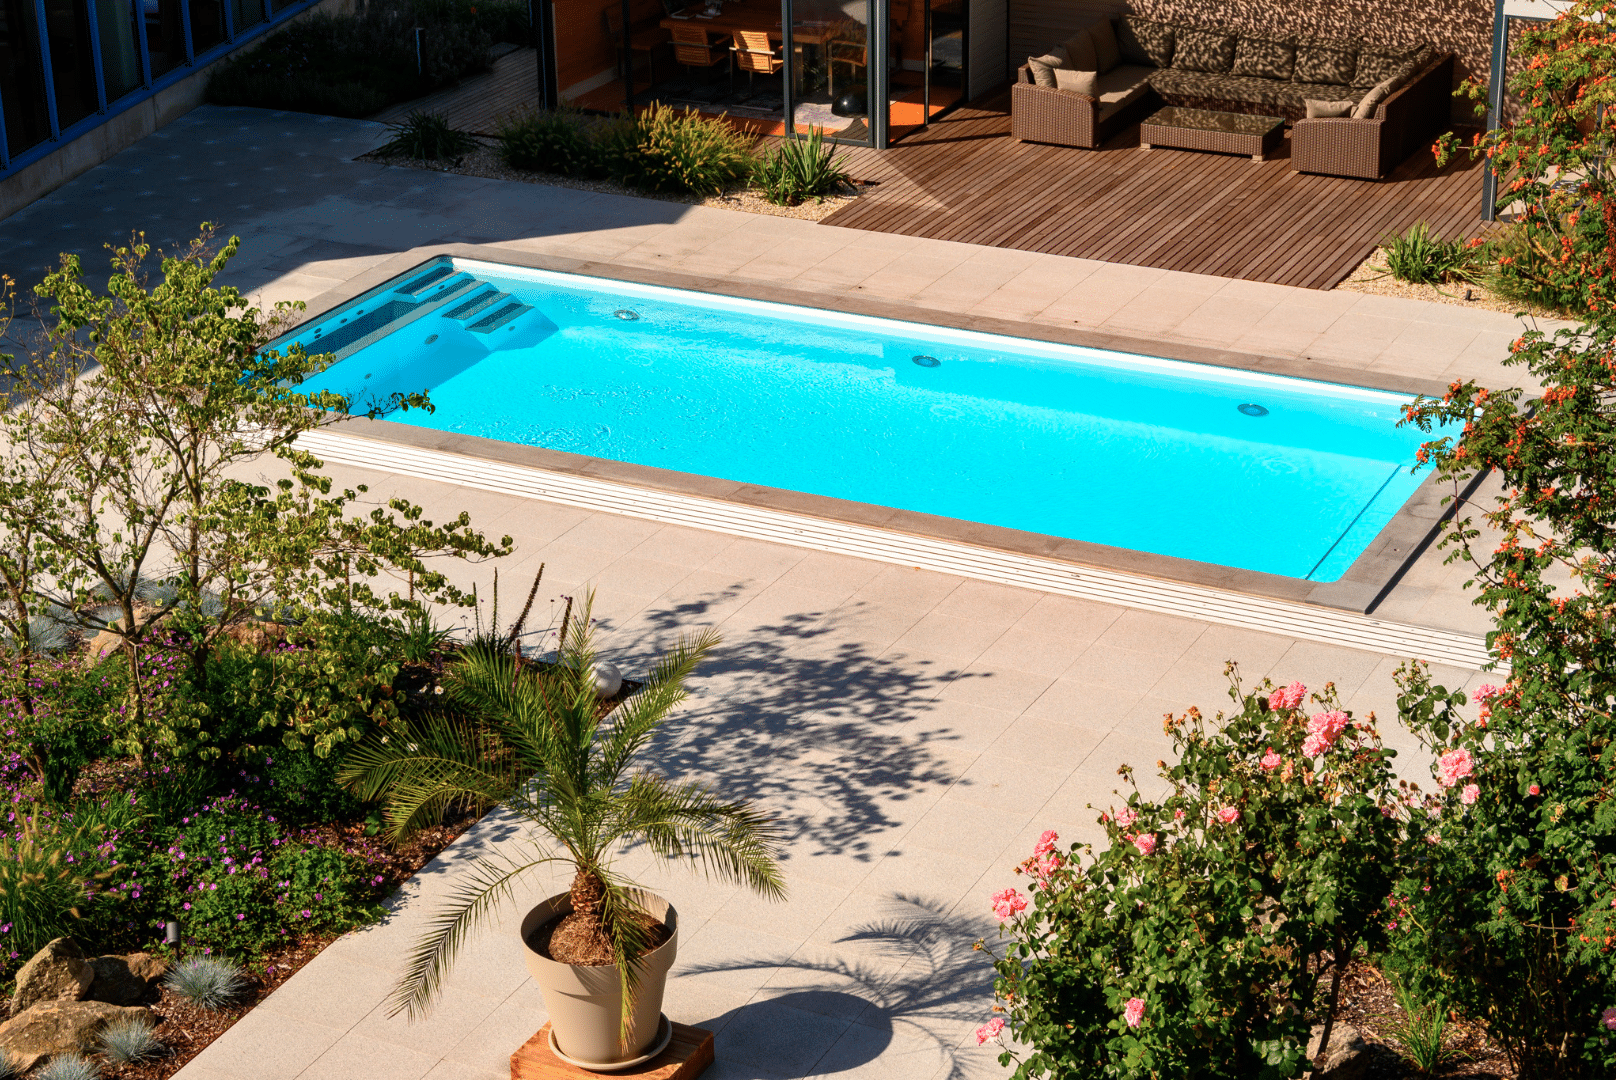 SAUNA-SCHWIMMBAD RUHA Stelzmüller zeigt einen Garten mit großem Swimmingpool und Terrasse.